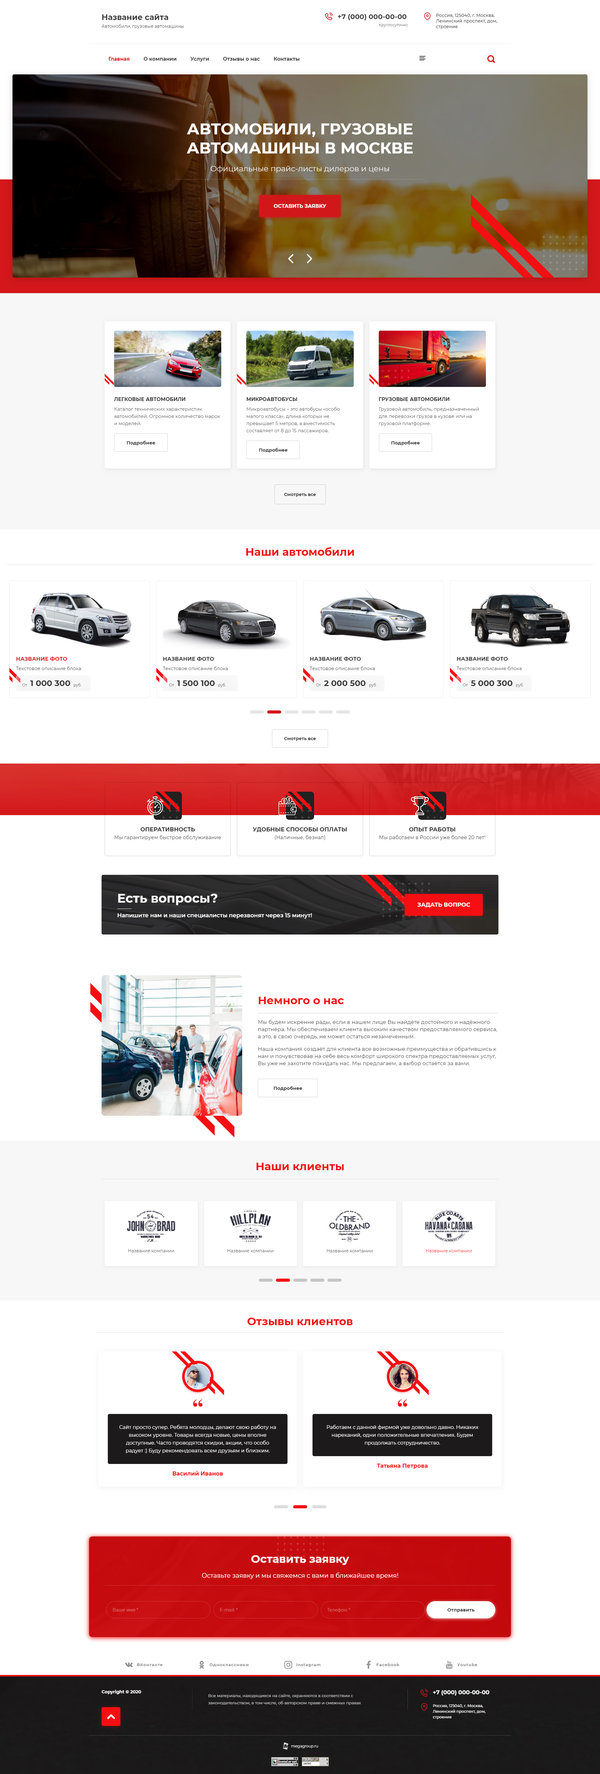 Готовый Сайт-Бизнес № 2642673 - Автомобили, грузовые автомашины (Десктопная версия)